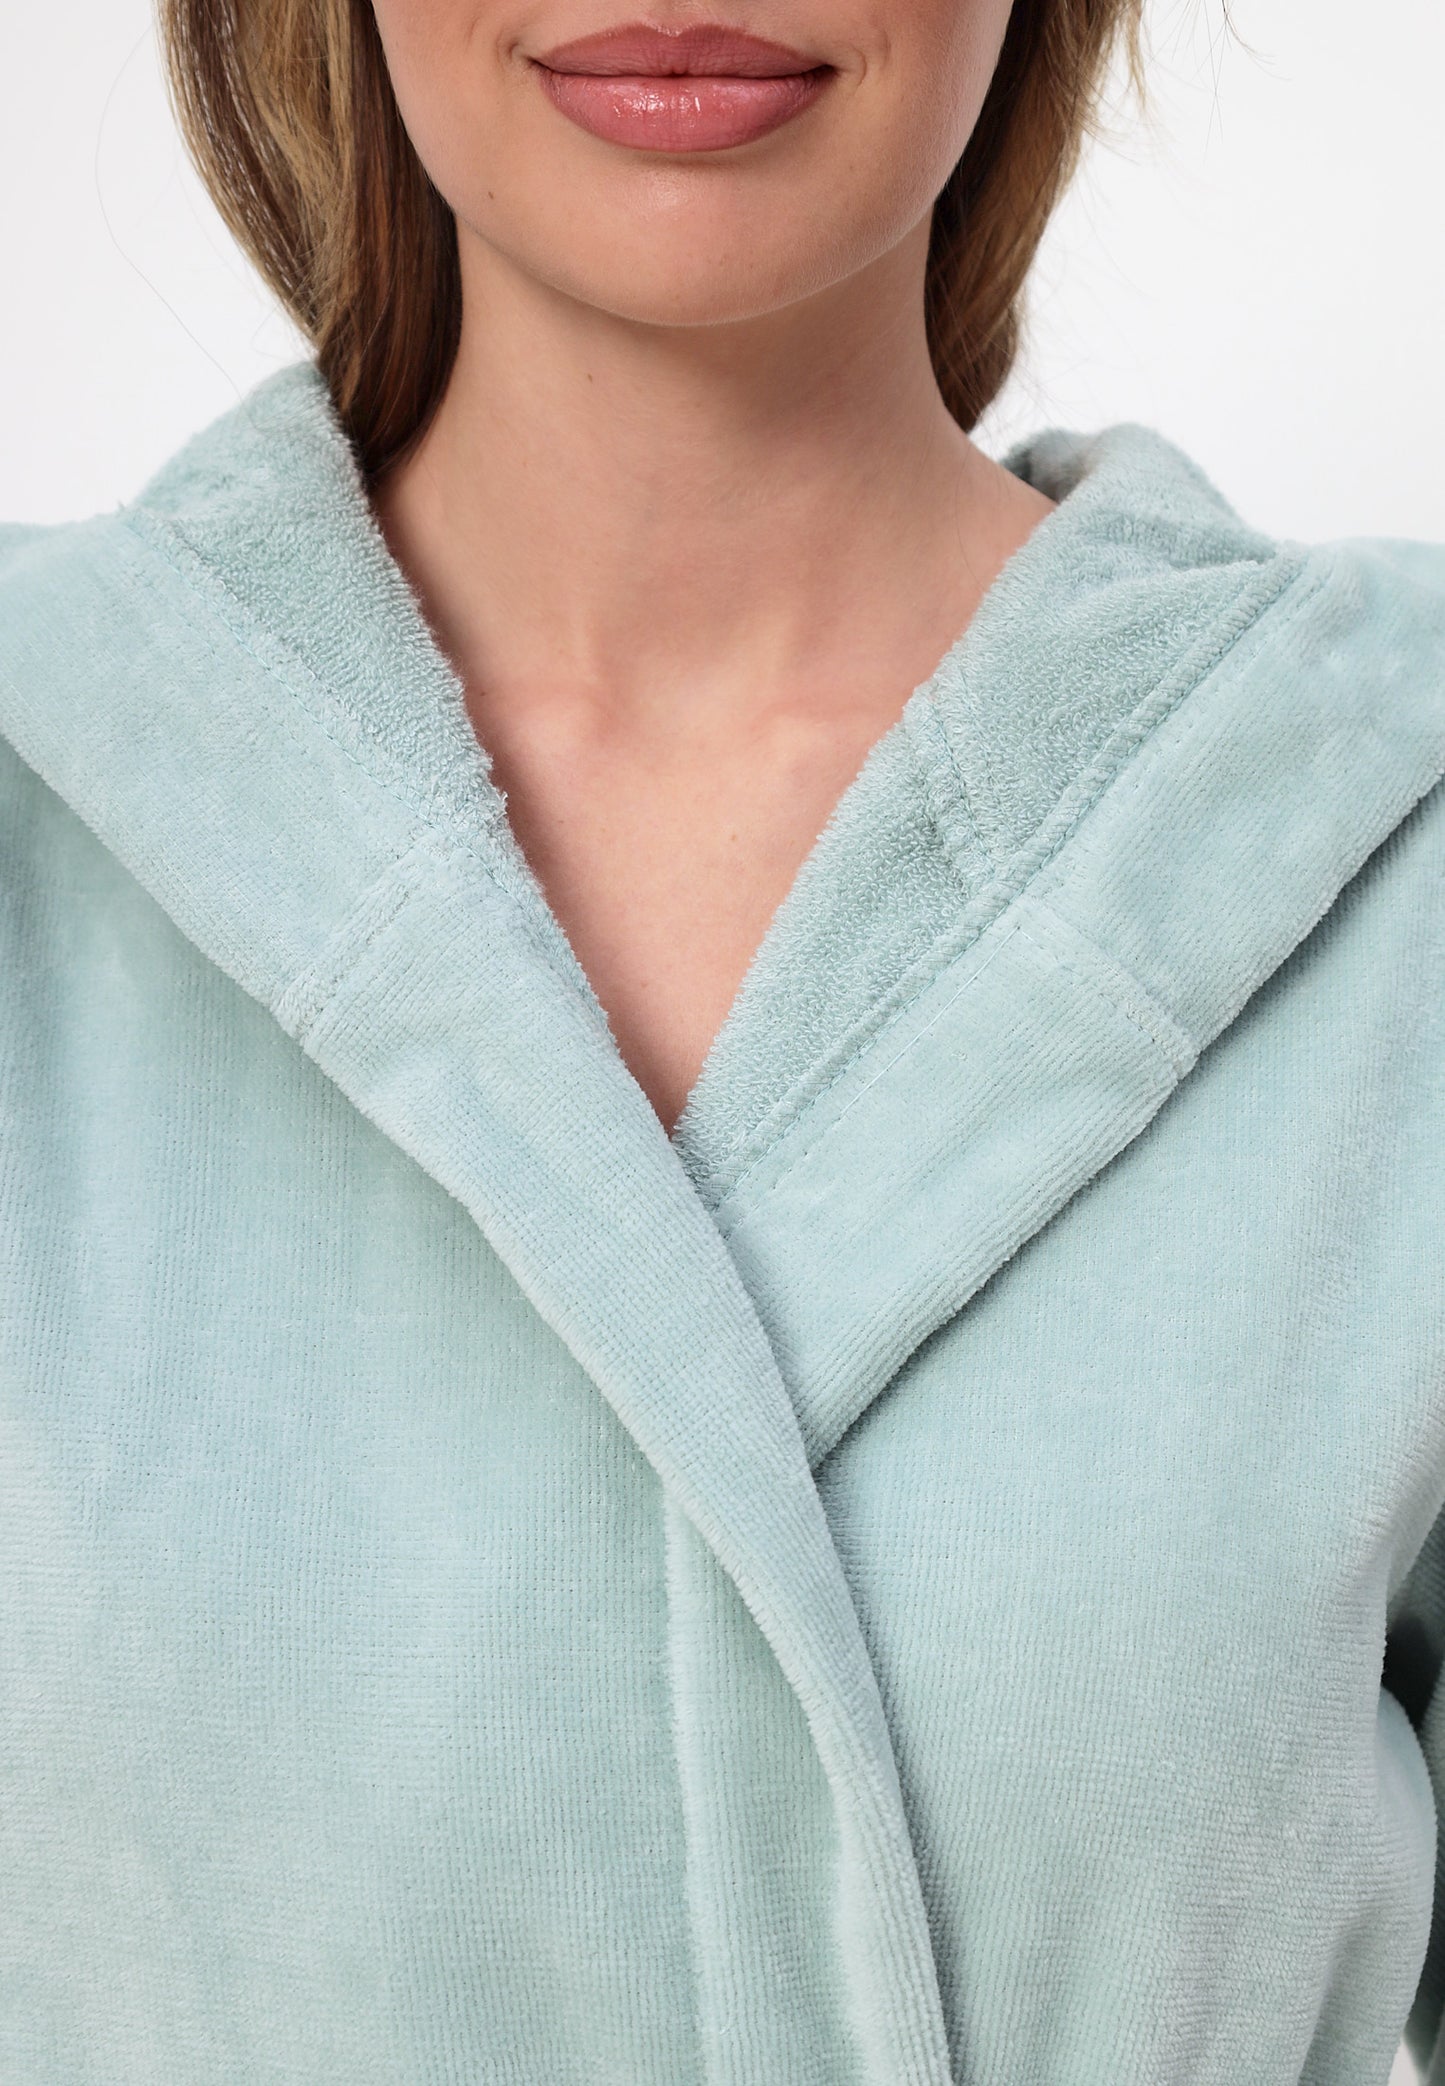 Damen Bademantel mit Kapuze aus 100% Baumwolle in Velour Design LMS-6351 Grau